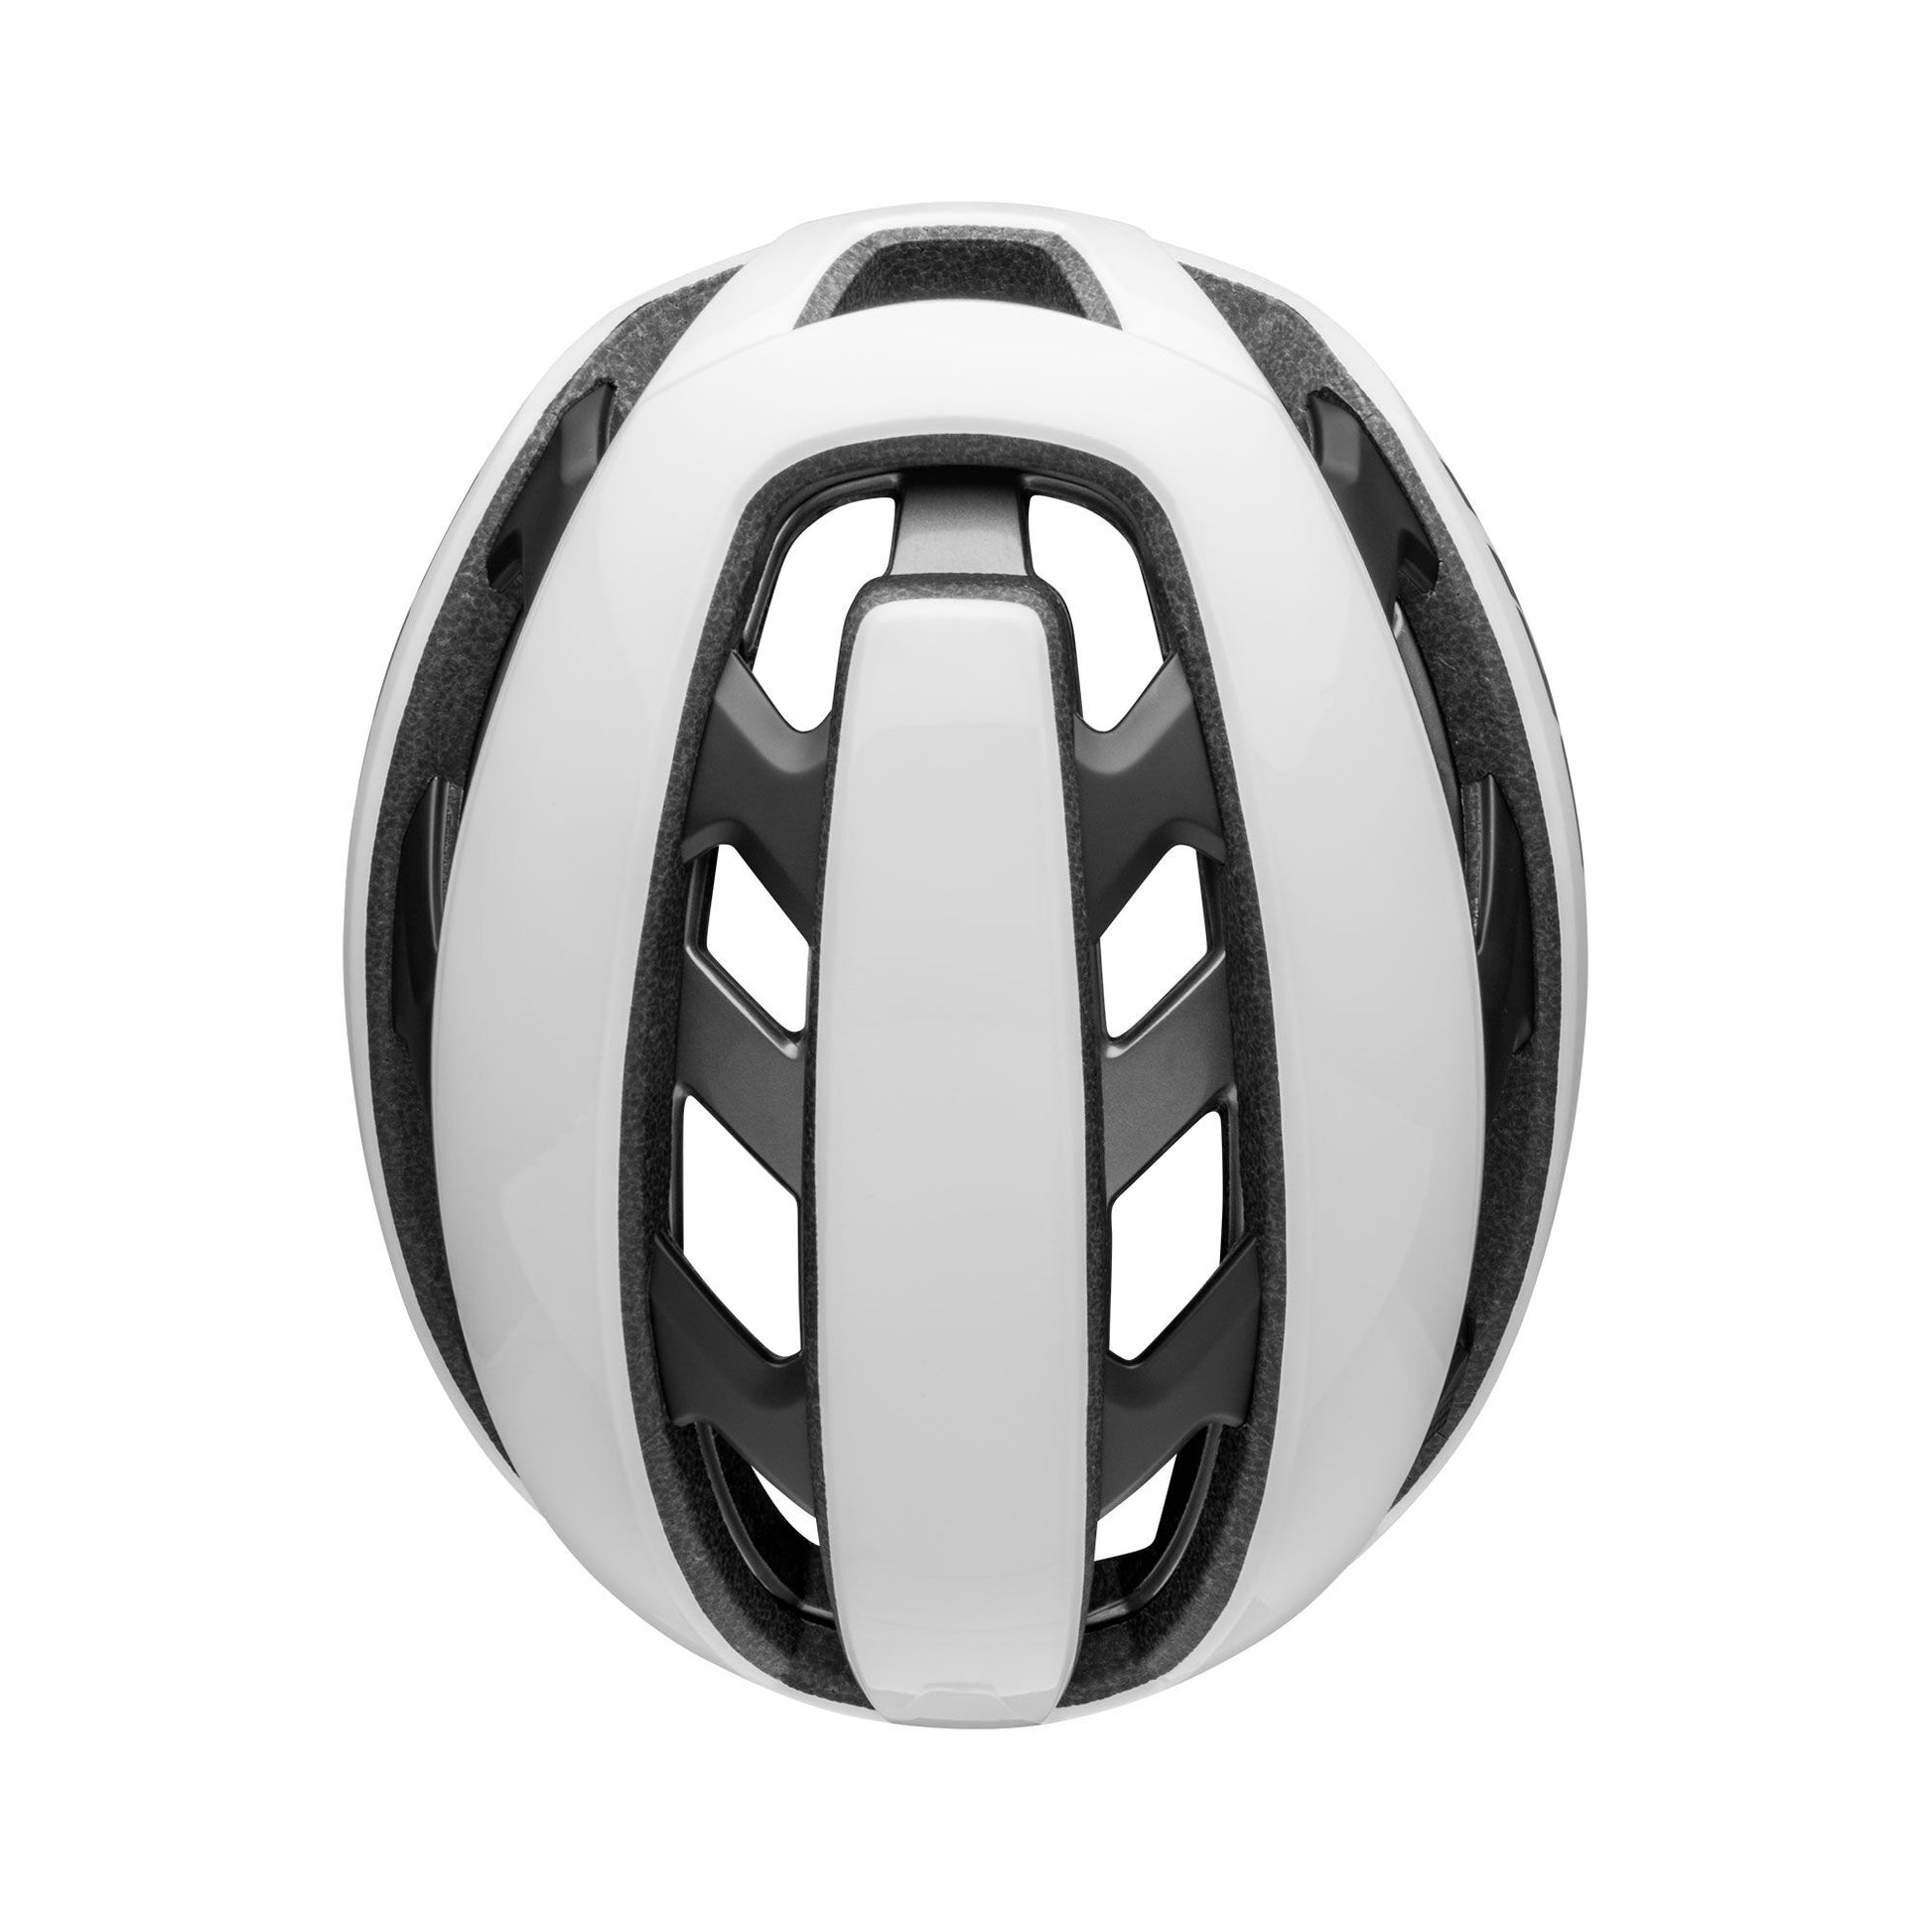 Bell XR Spherical Helmet Matte Gloss White Black Bike Helmets